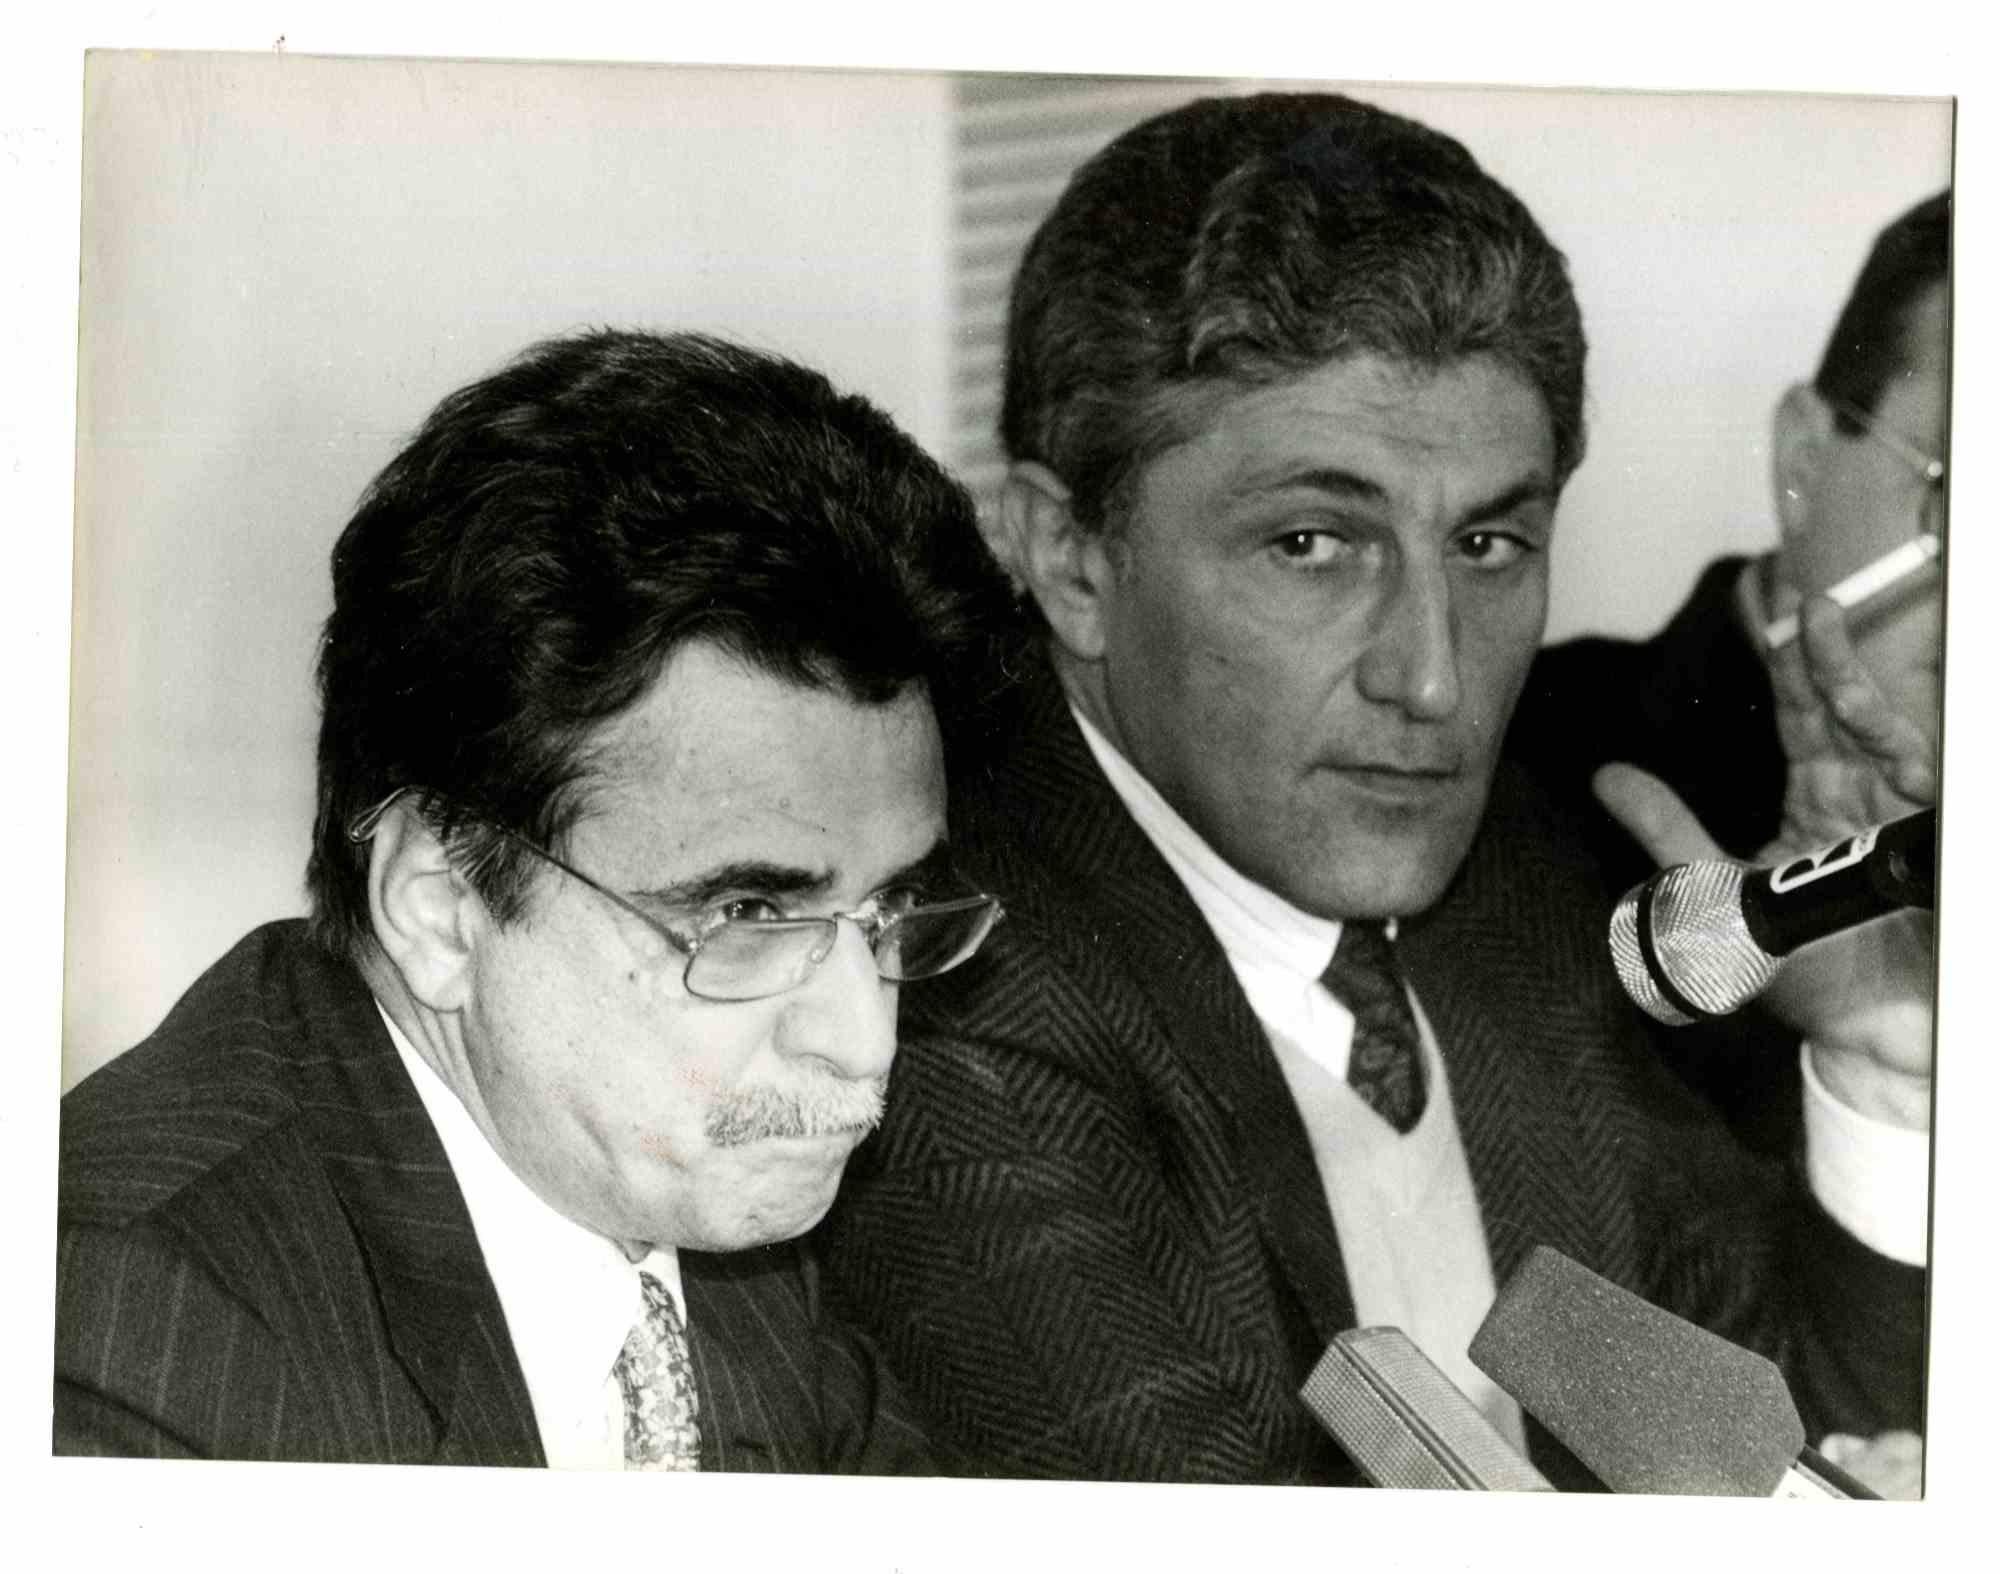 Achille Occhetto and Antonio Bassolino - Vintage Photo - 1980s